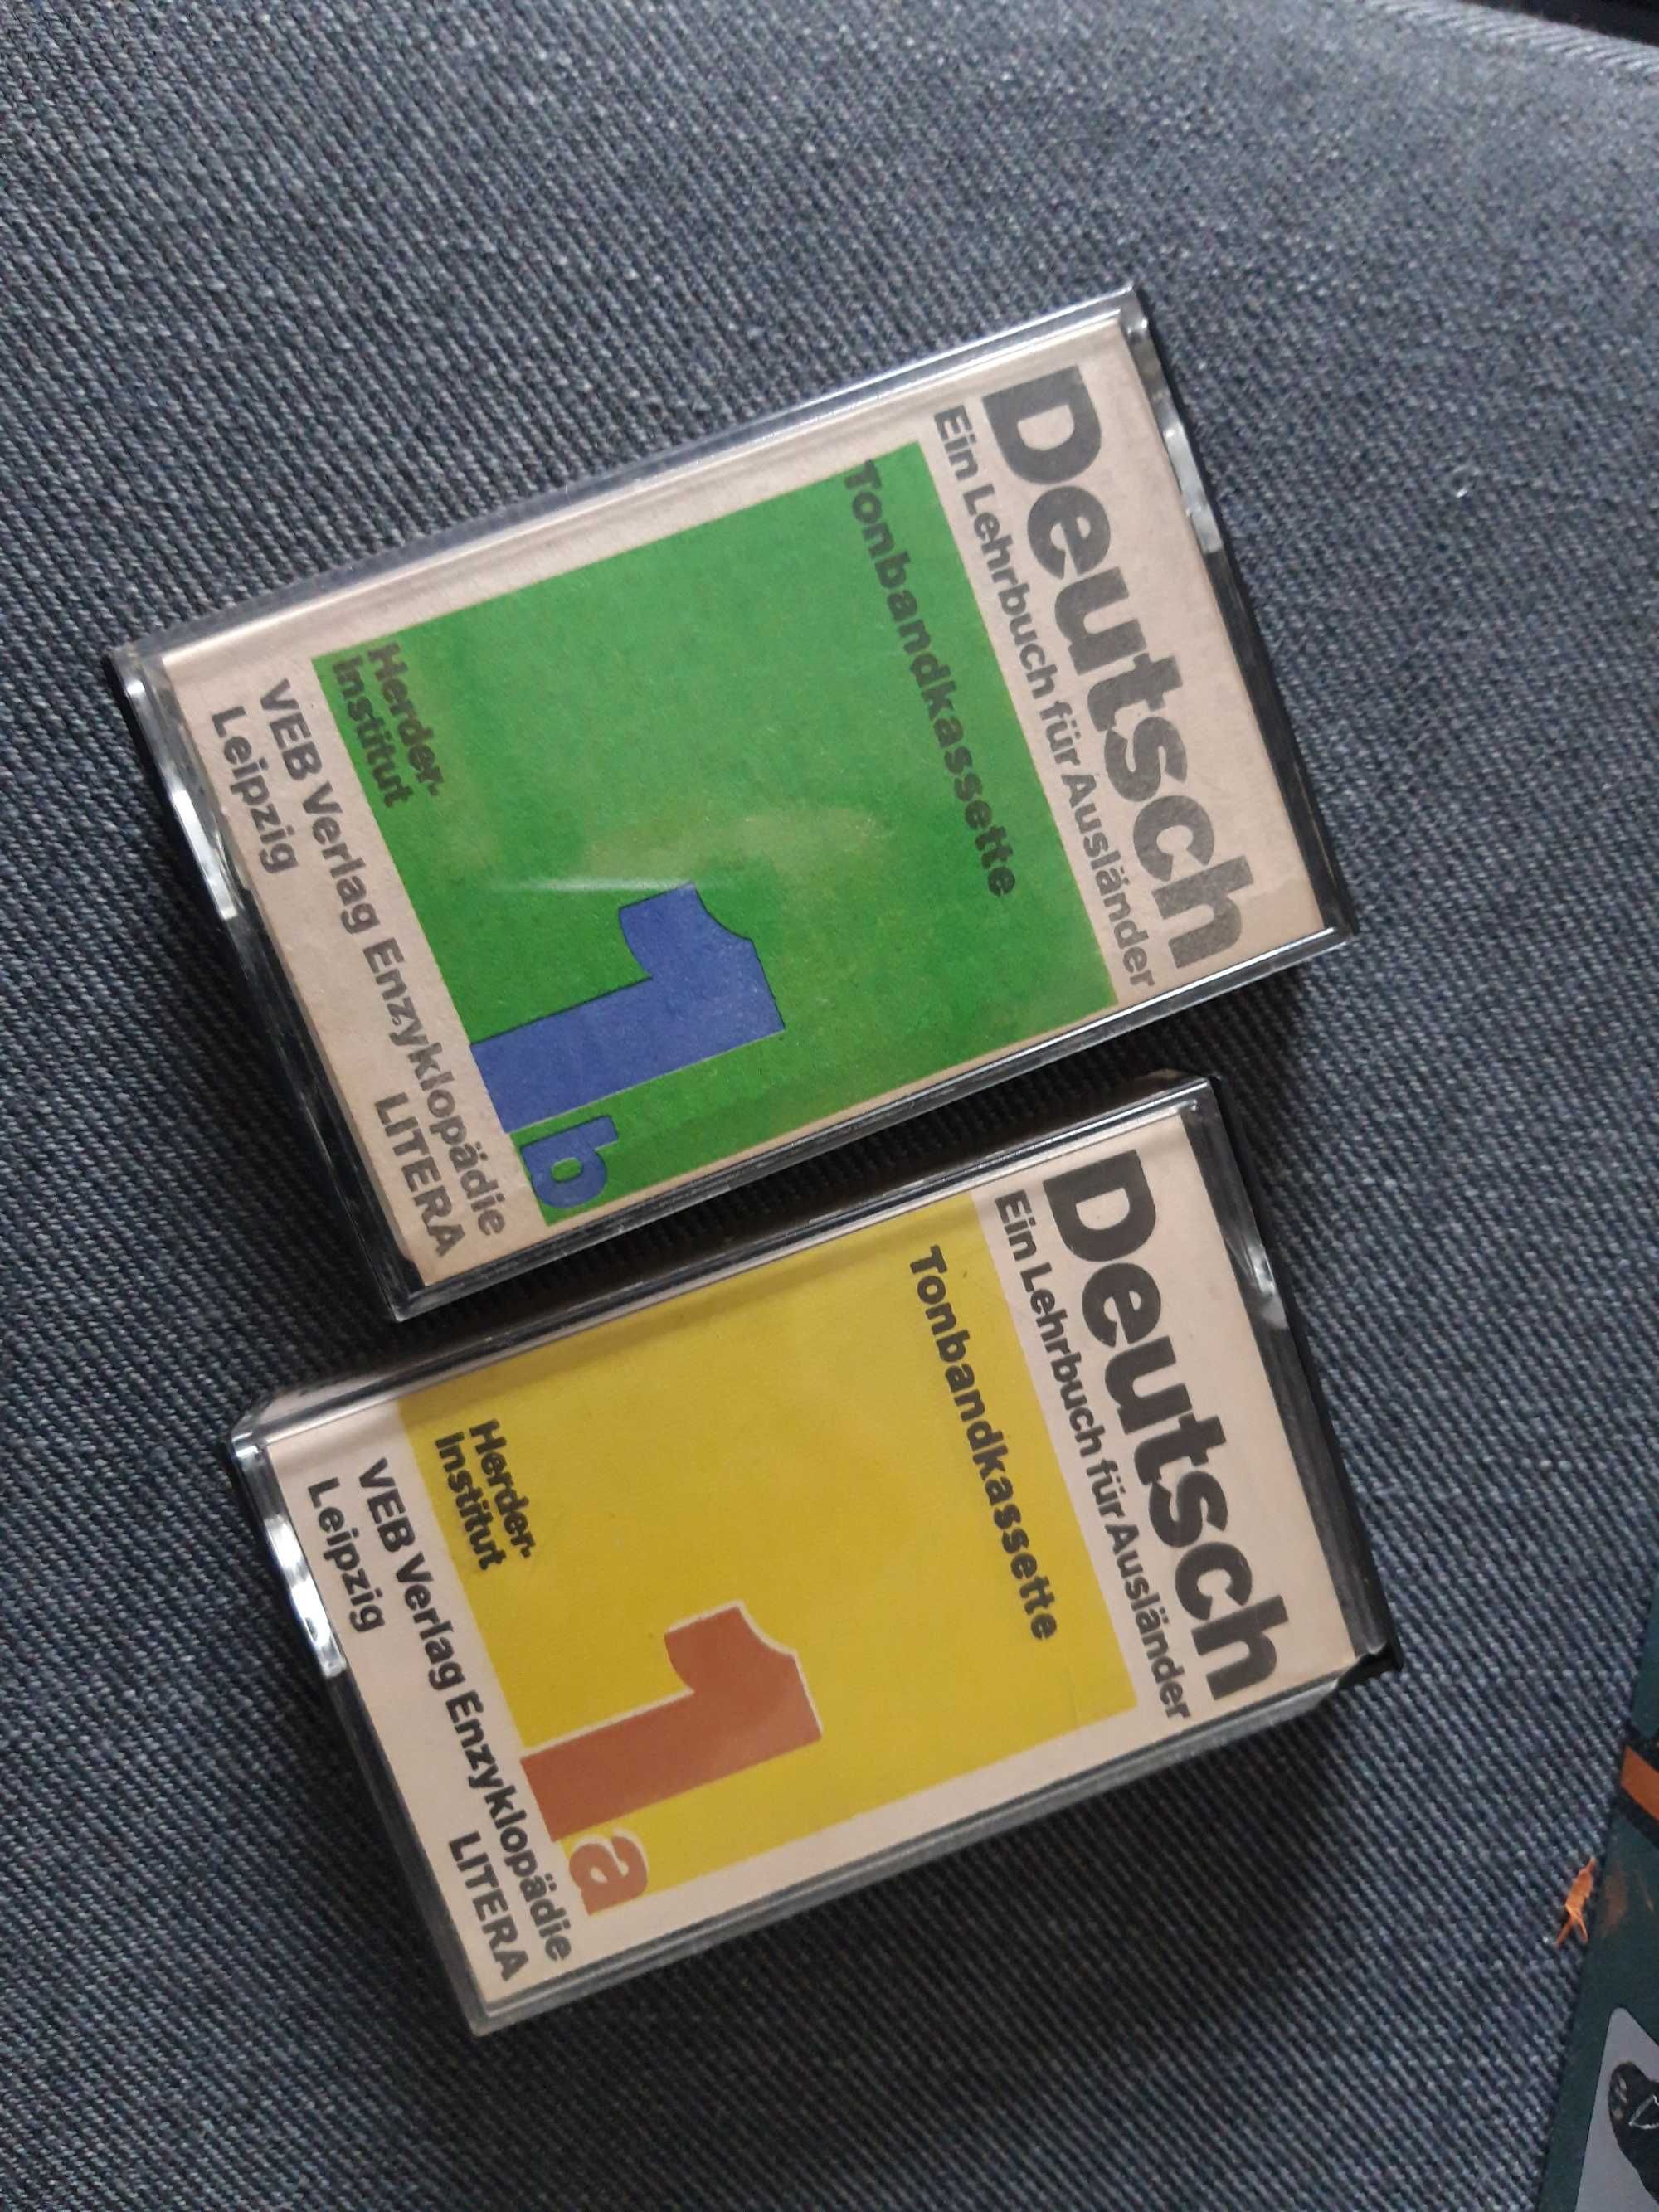 Kurs nauki języka niemieckiego na 2 kasetach magnetofonowych